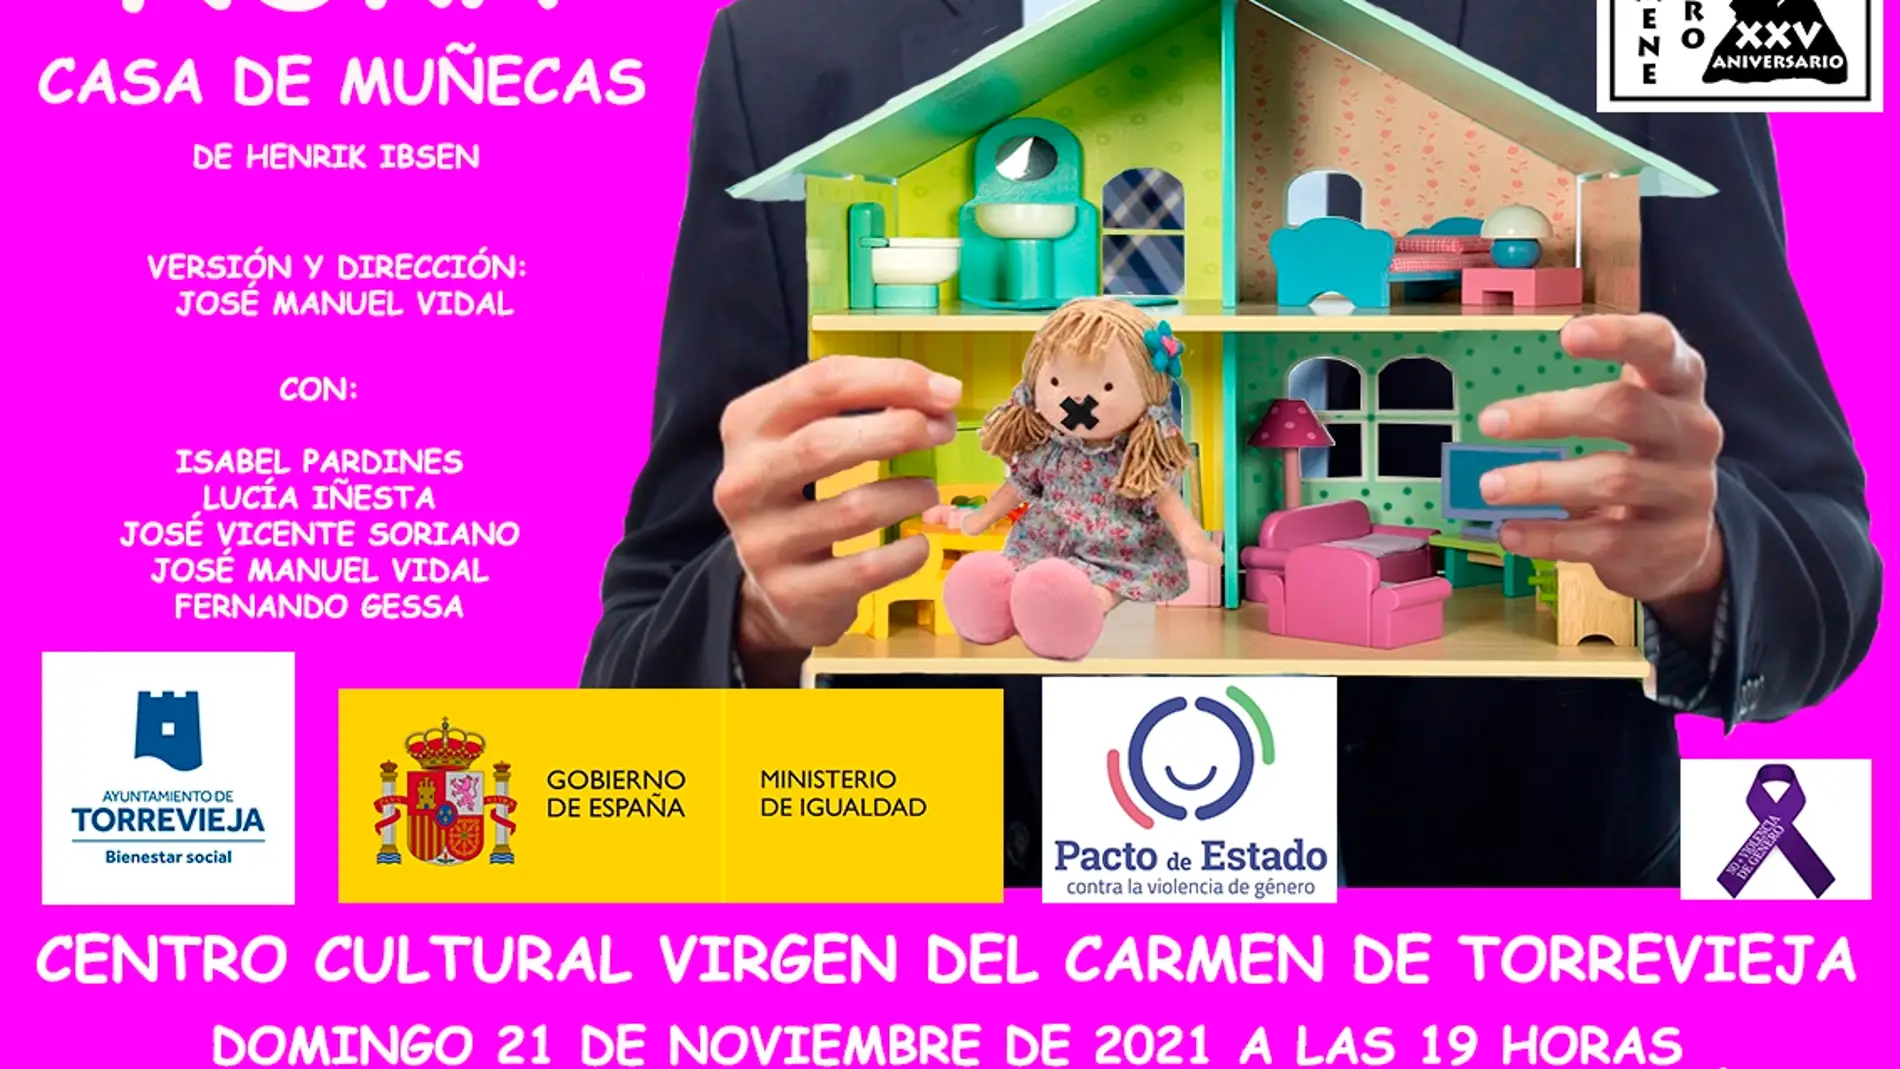 El centro cultural Virgen del Carmen acogera una obra de teatro contra la violencia de genero     